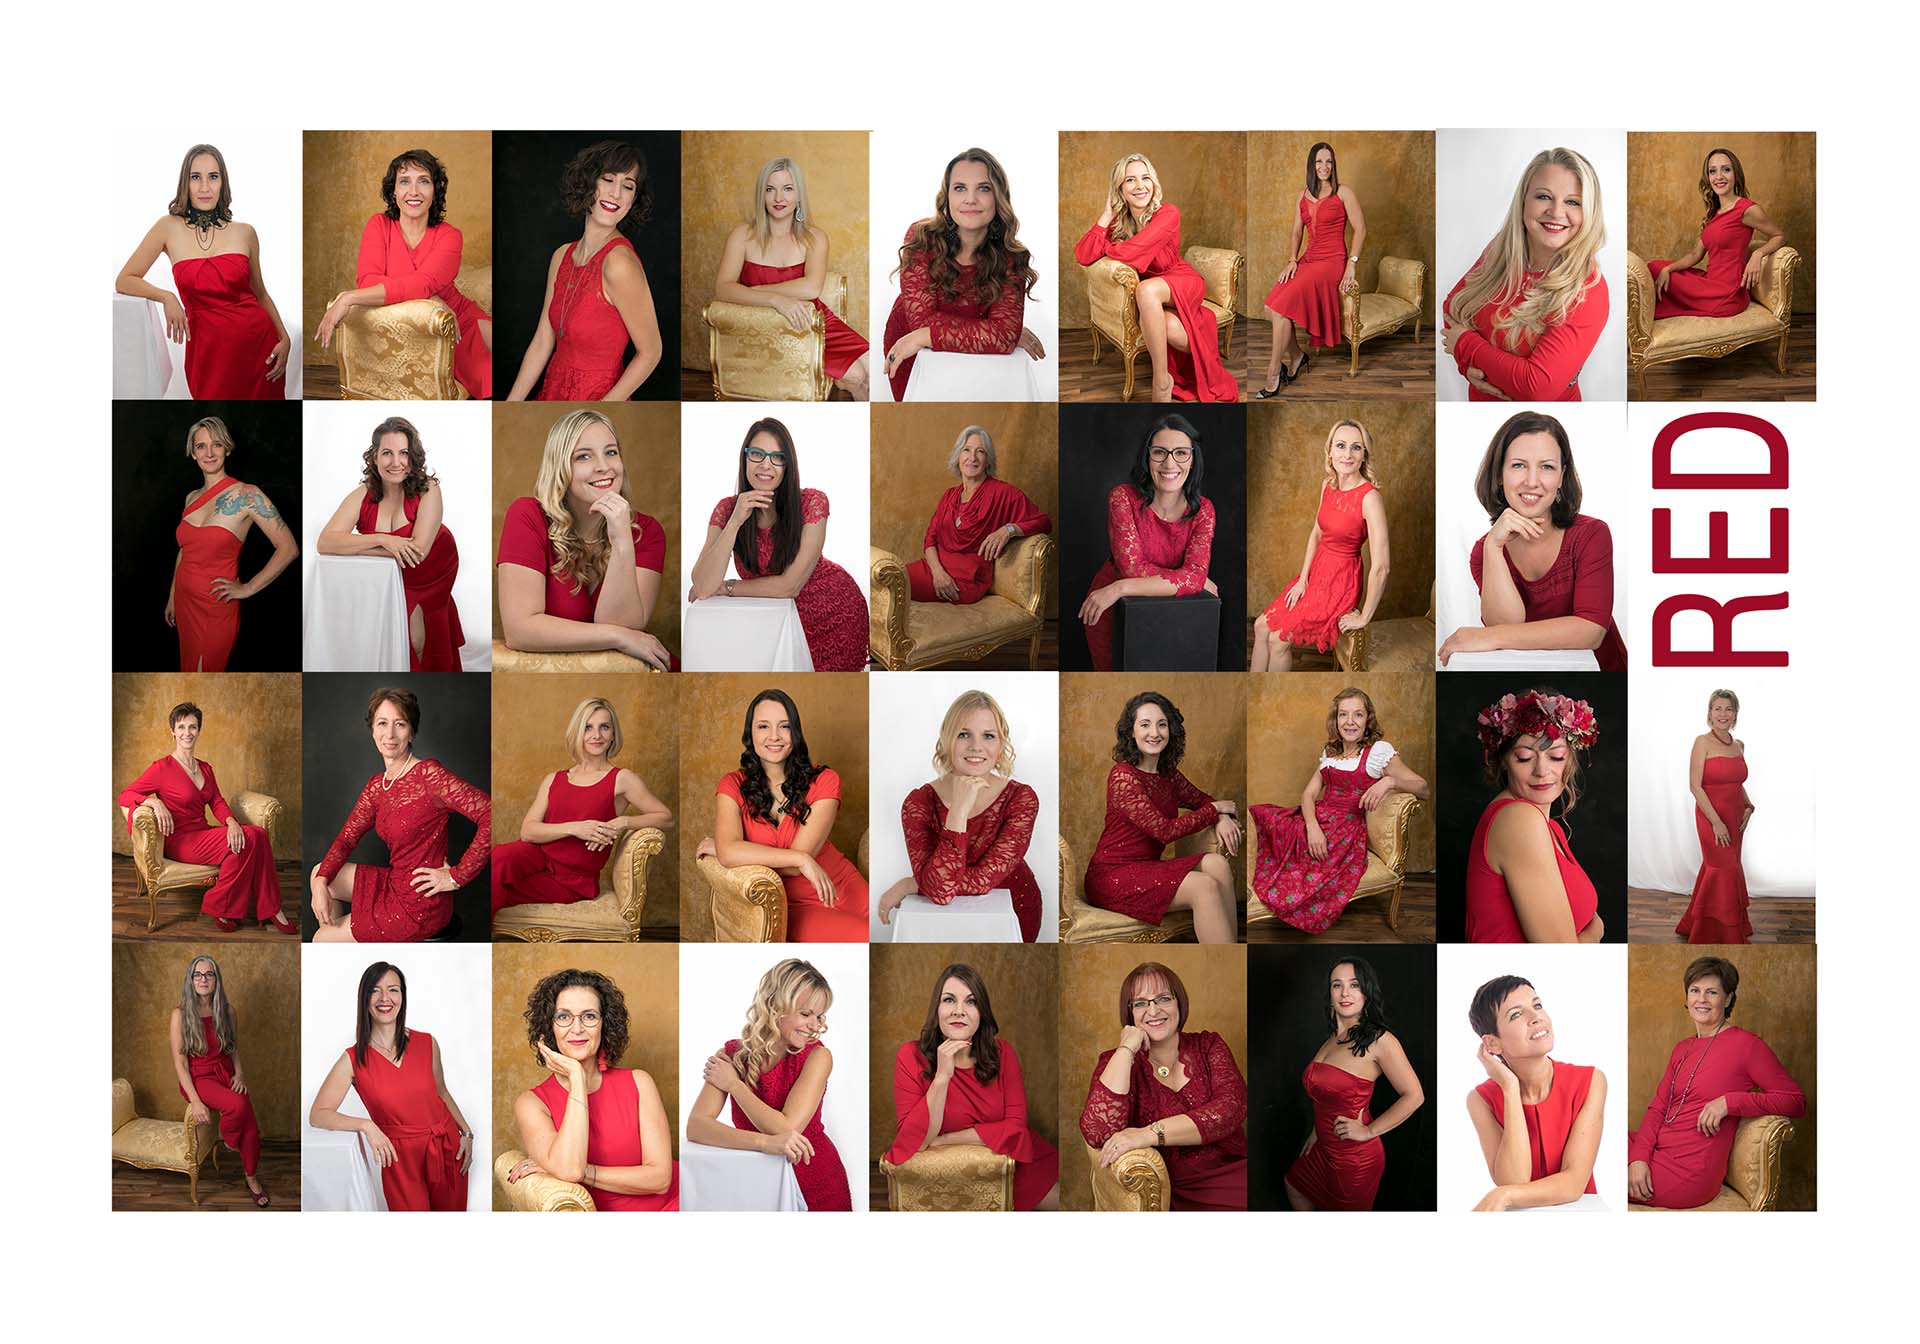 Bild zeigt 36 selbstbewusste Unternehmerinnen in roten Outfits für das Projekt RED